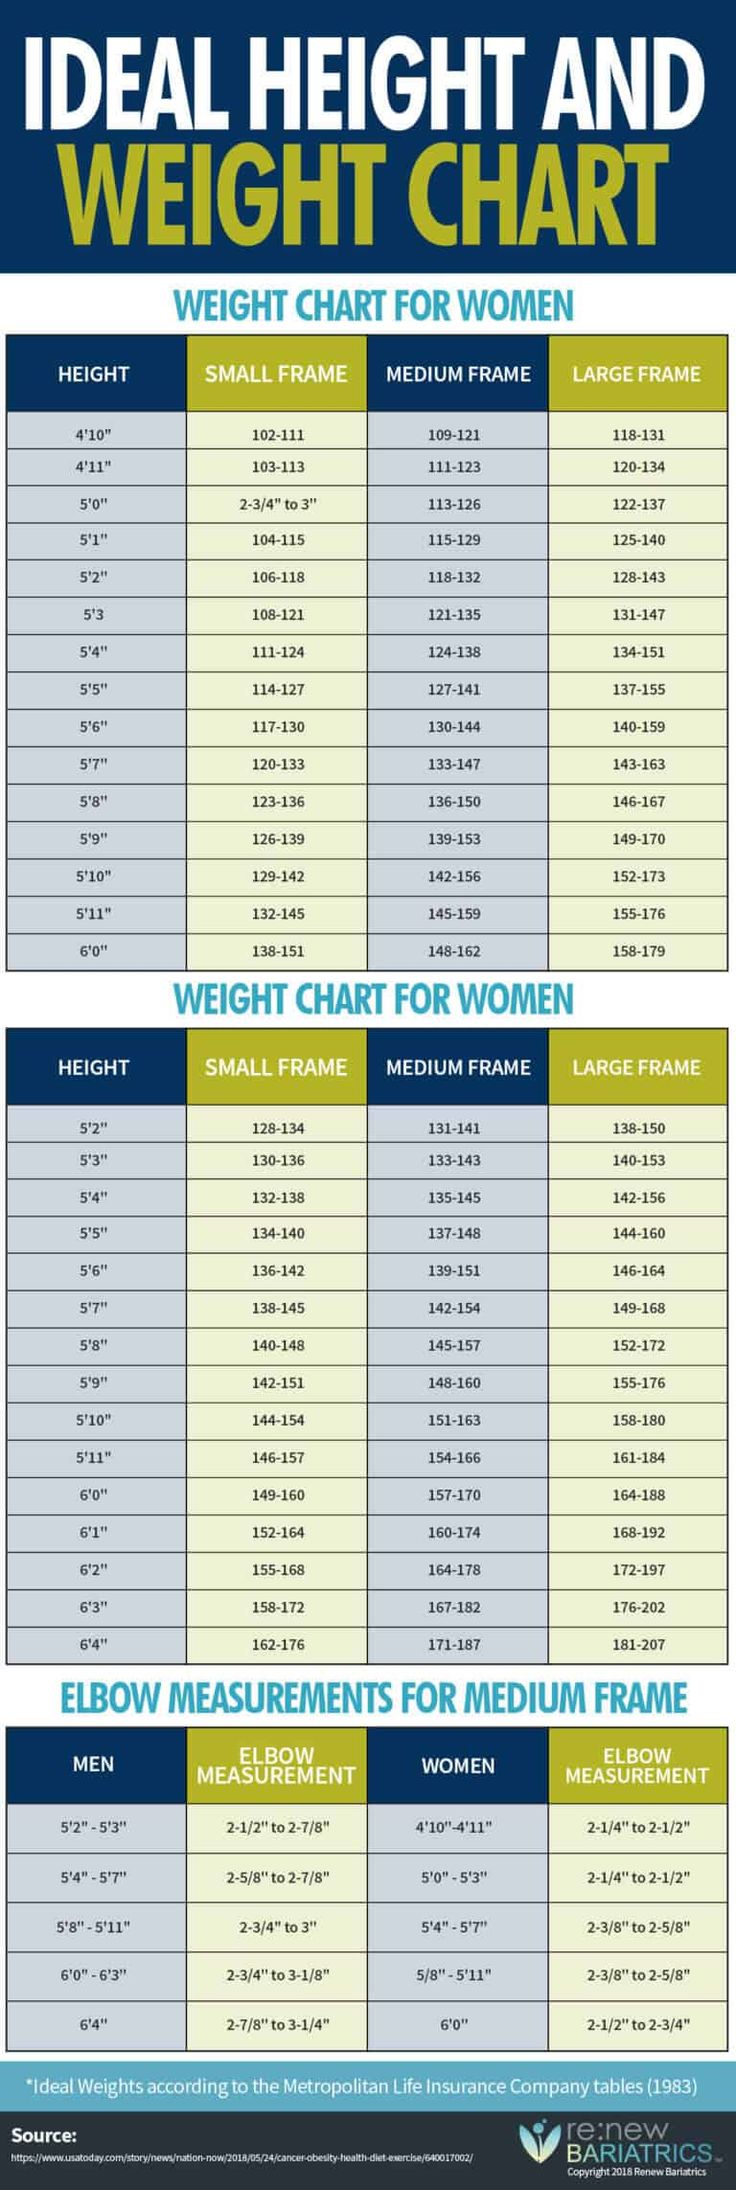 Gesundes Gewicht für Männer